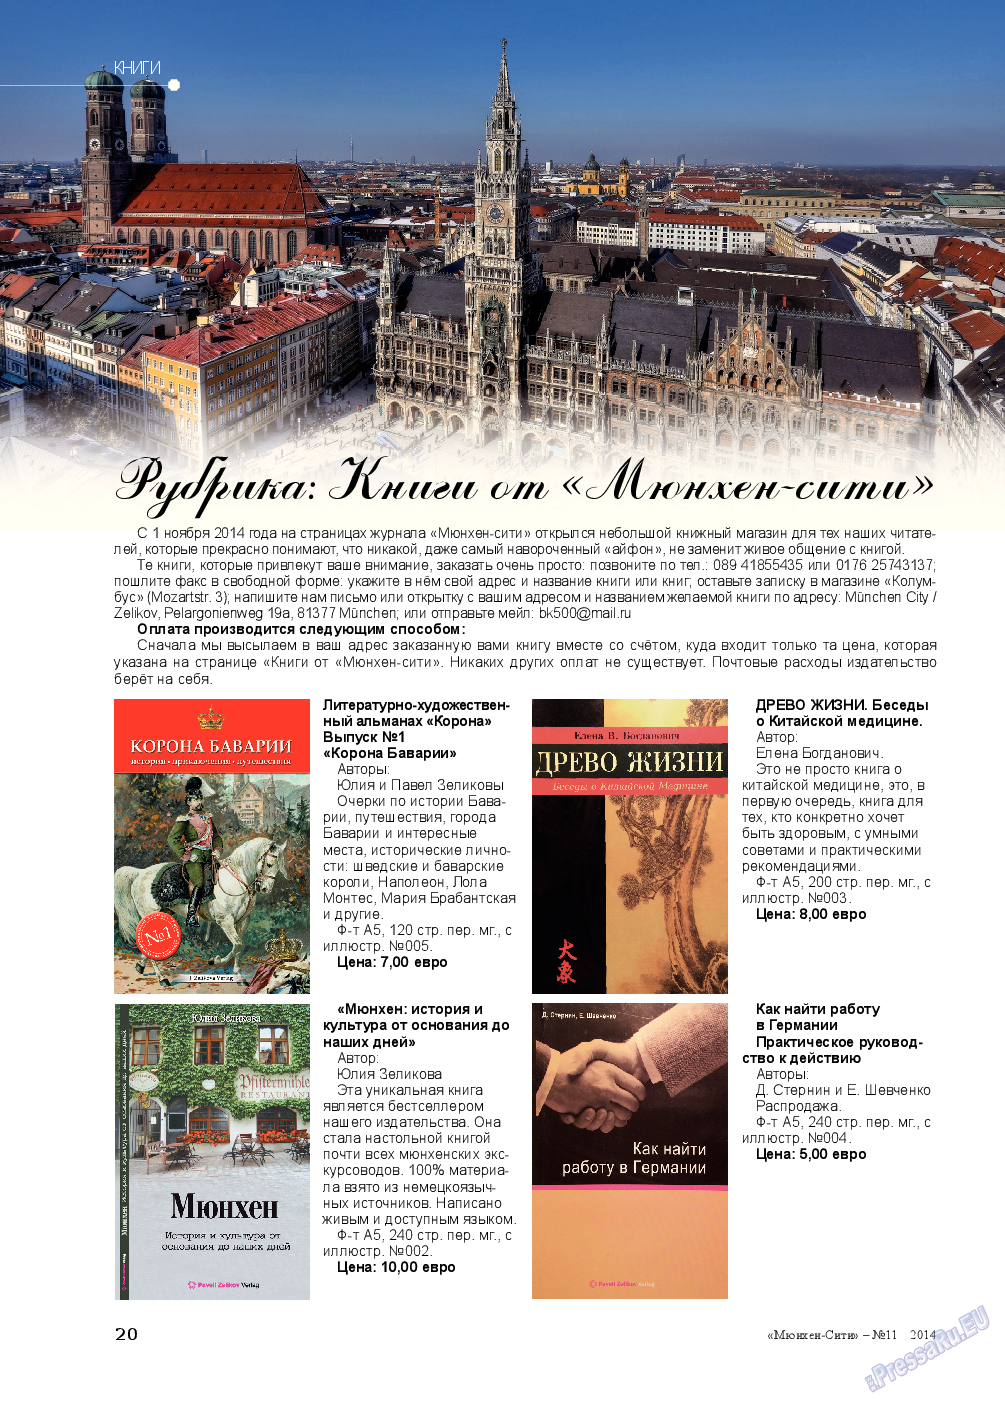 Мюнхен-сити (журнал). 2014 год, номер 11, стр. 20